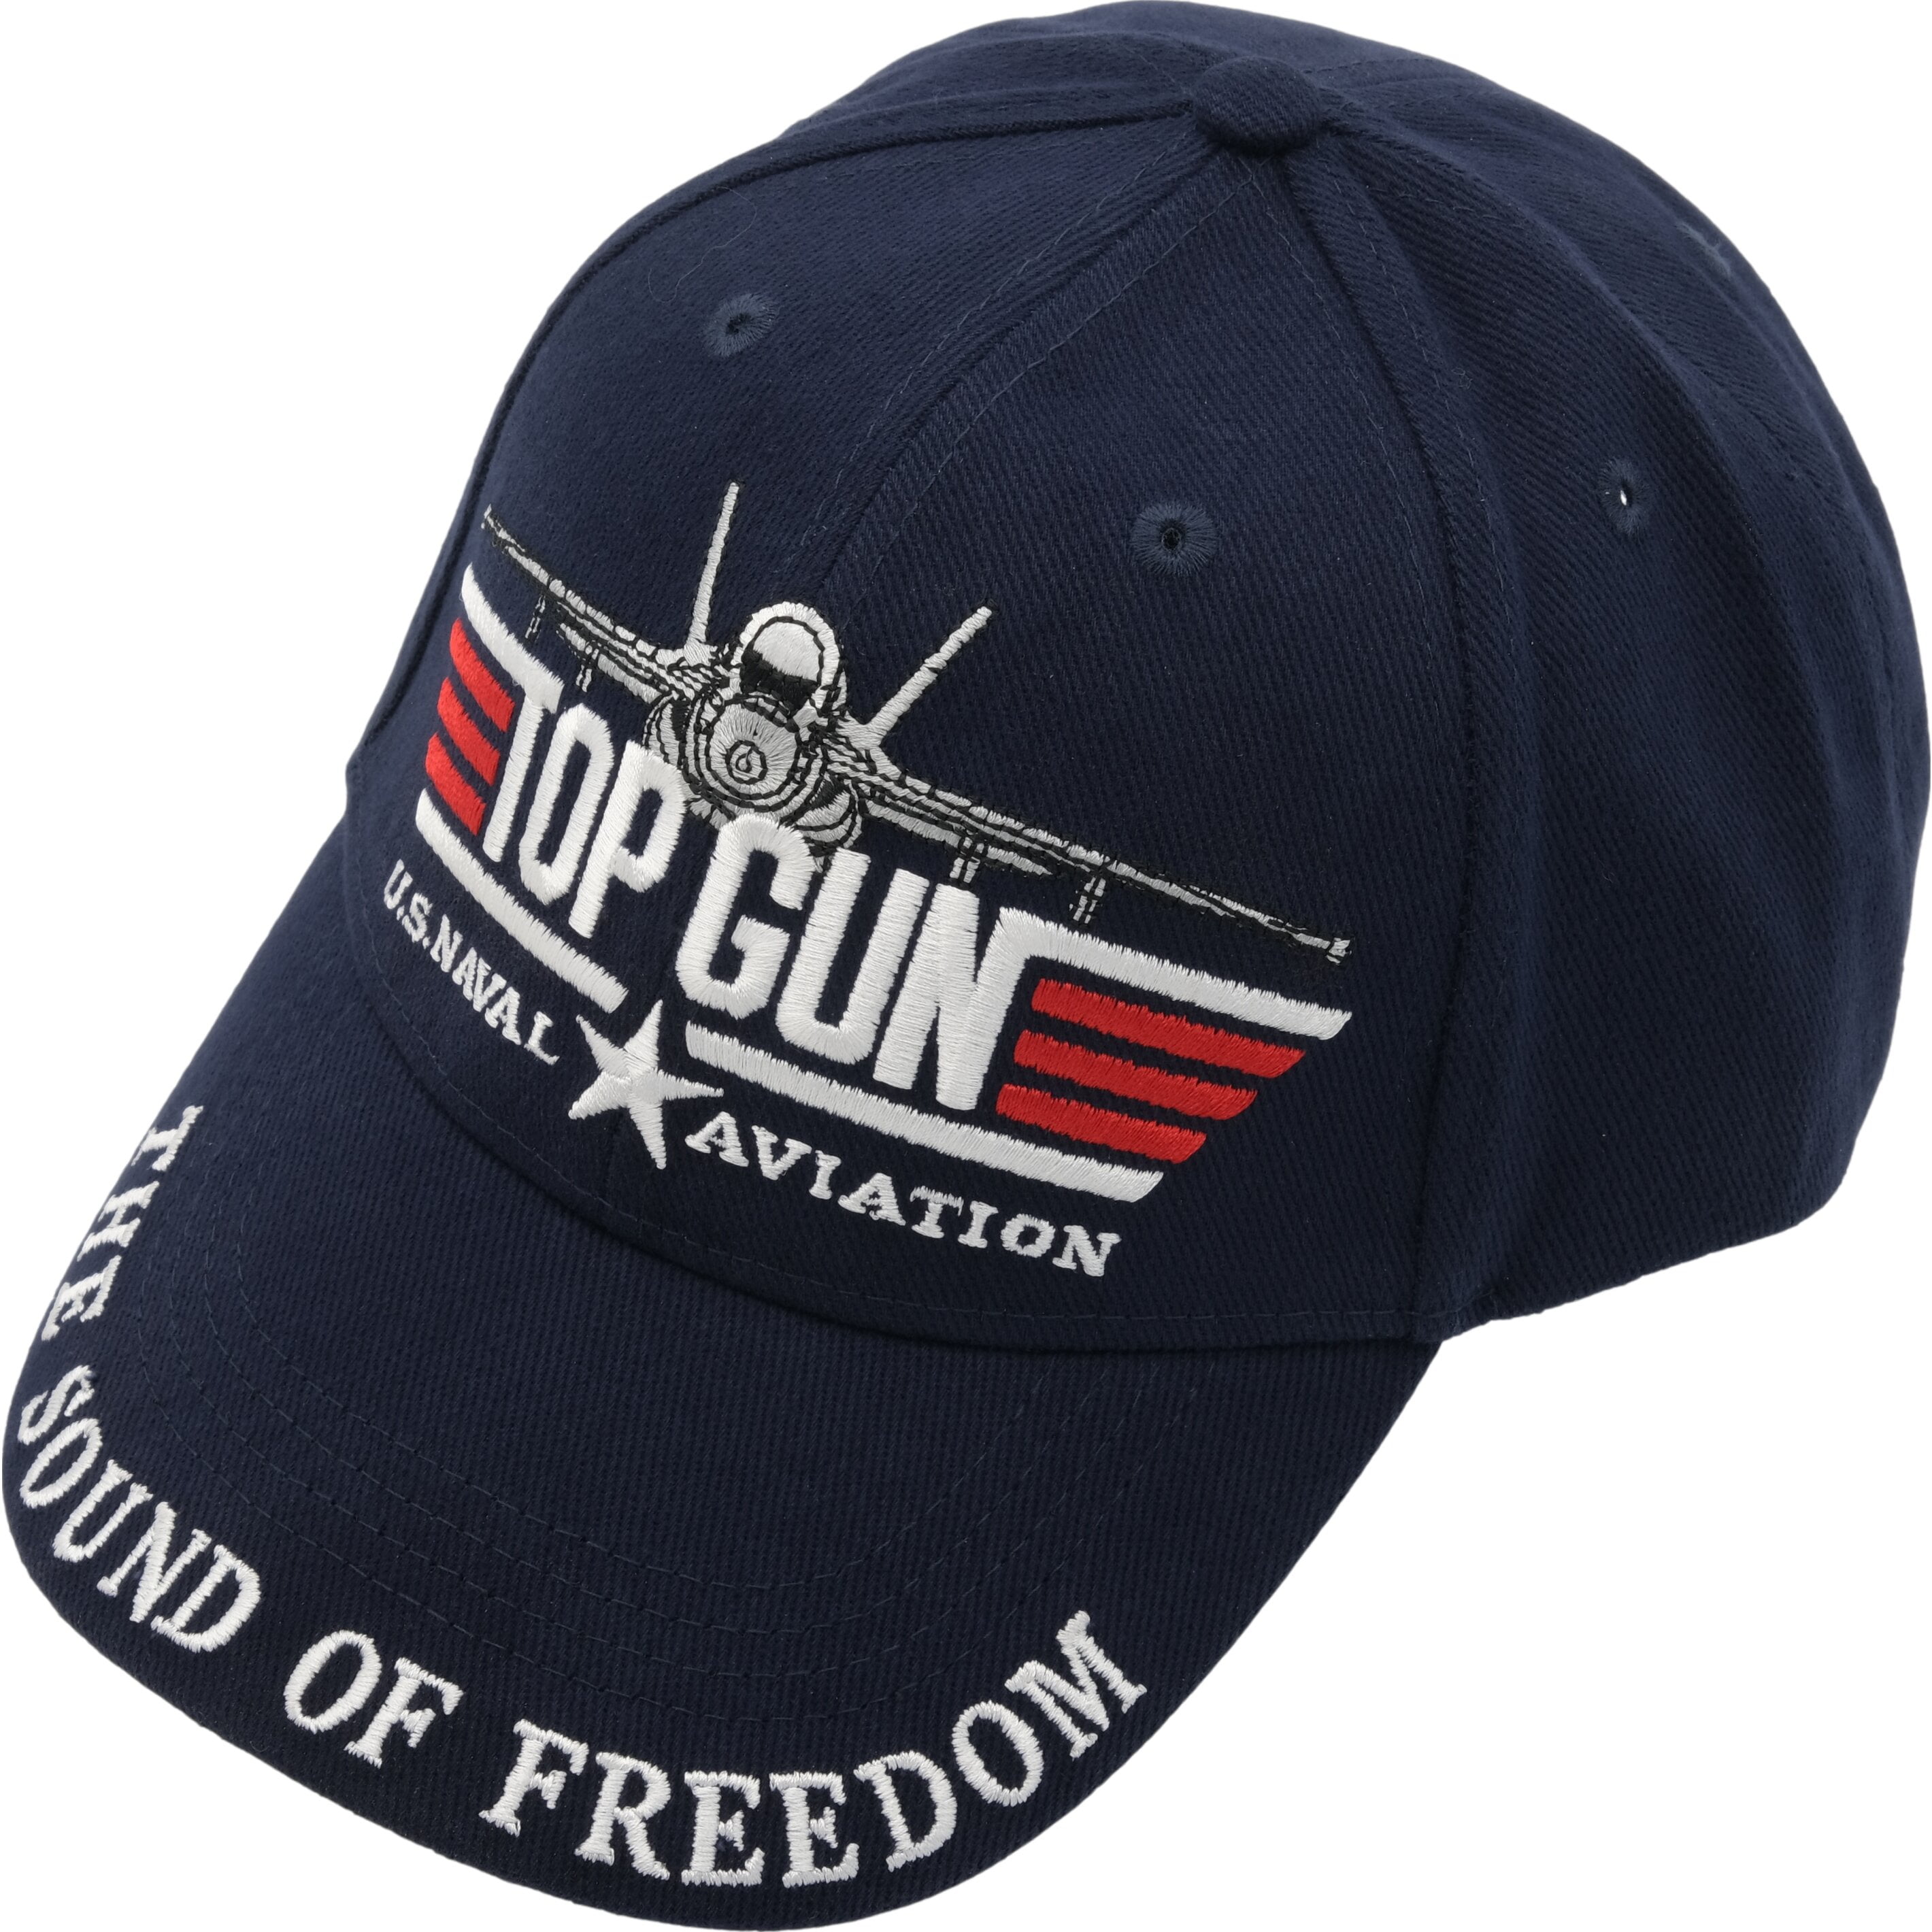 Top Gun Hat U.S.Navy Cap Aviation